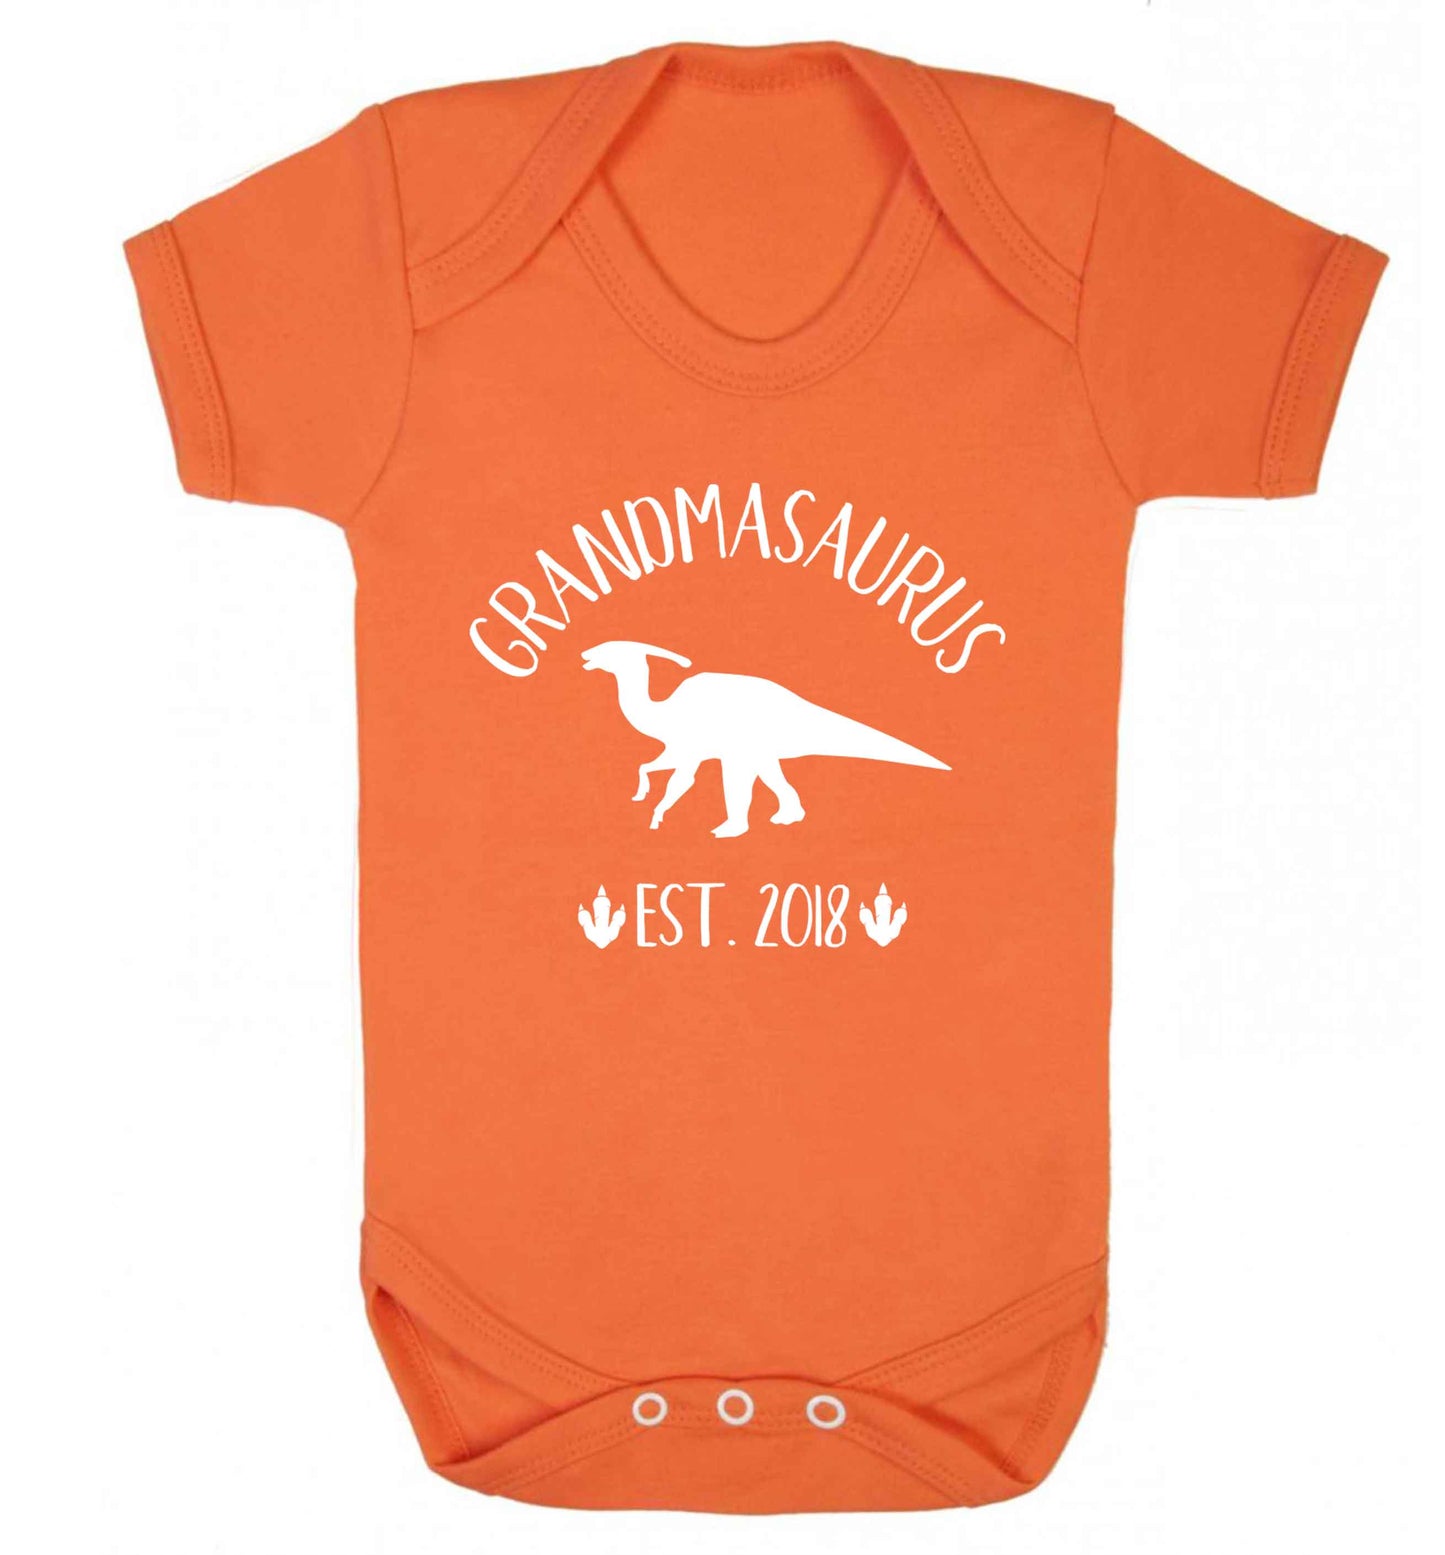 Personalised grandmasaurus since (custom date) Baby Vest orange 18-24 months